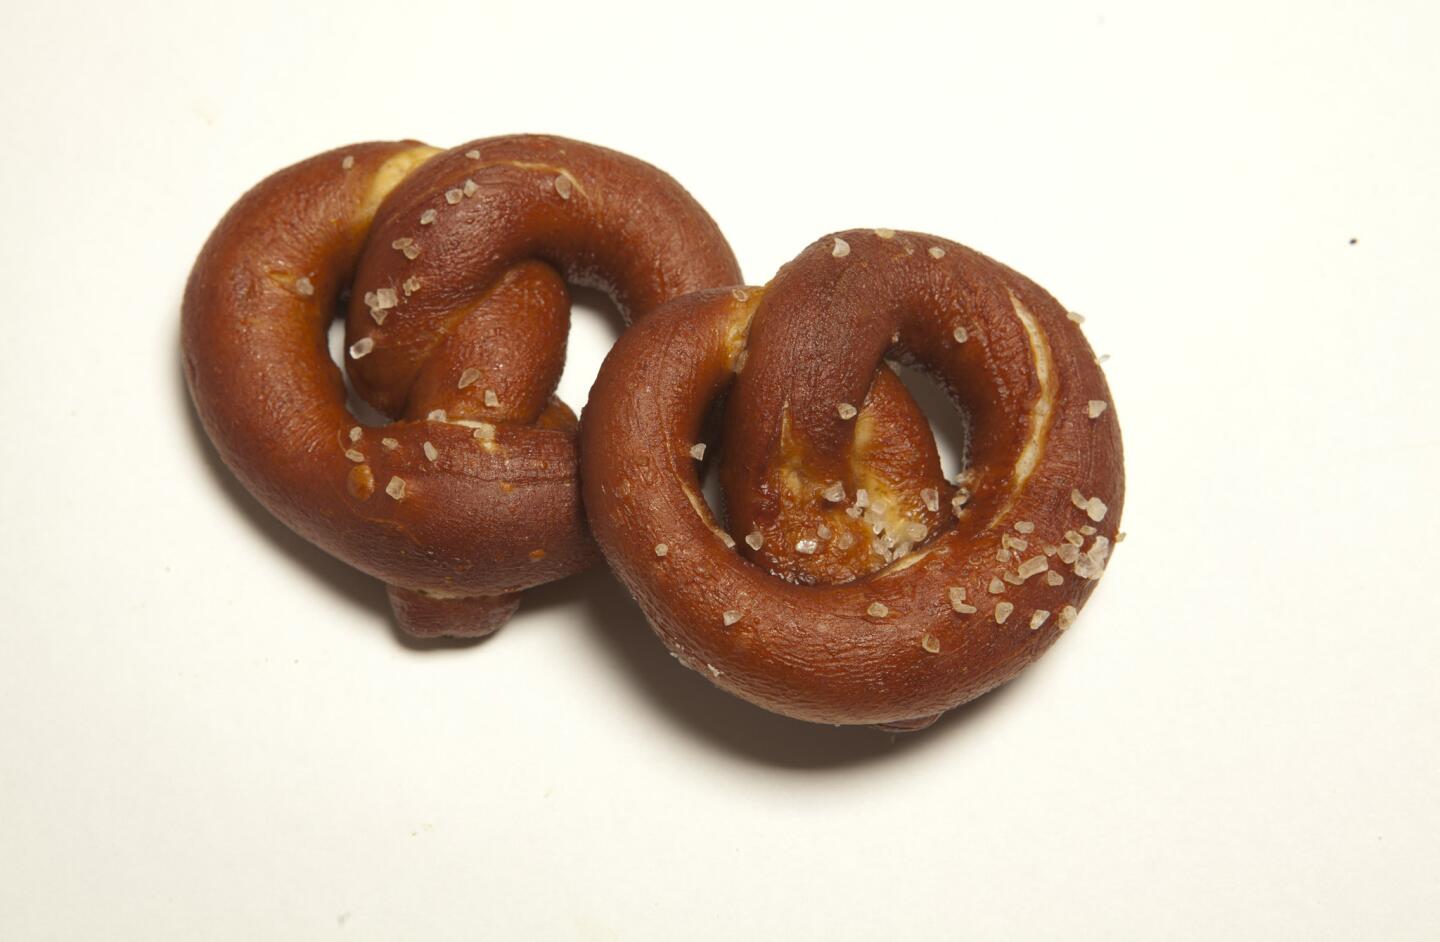 Hard pretzels